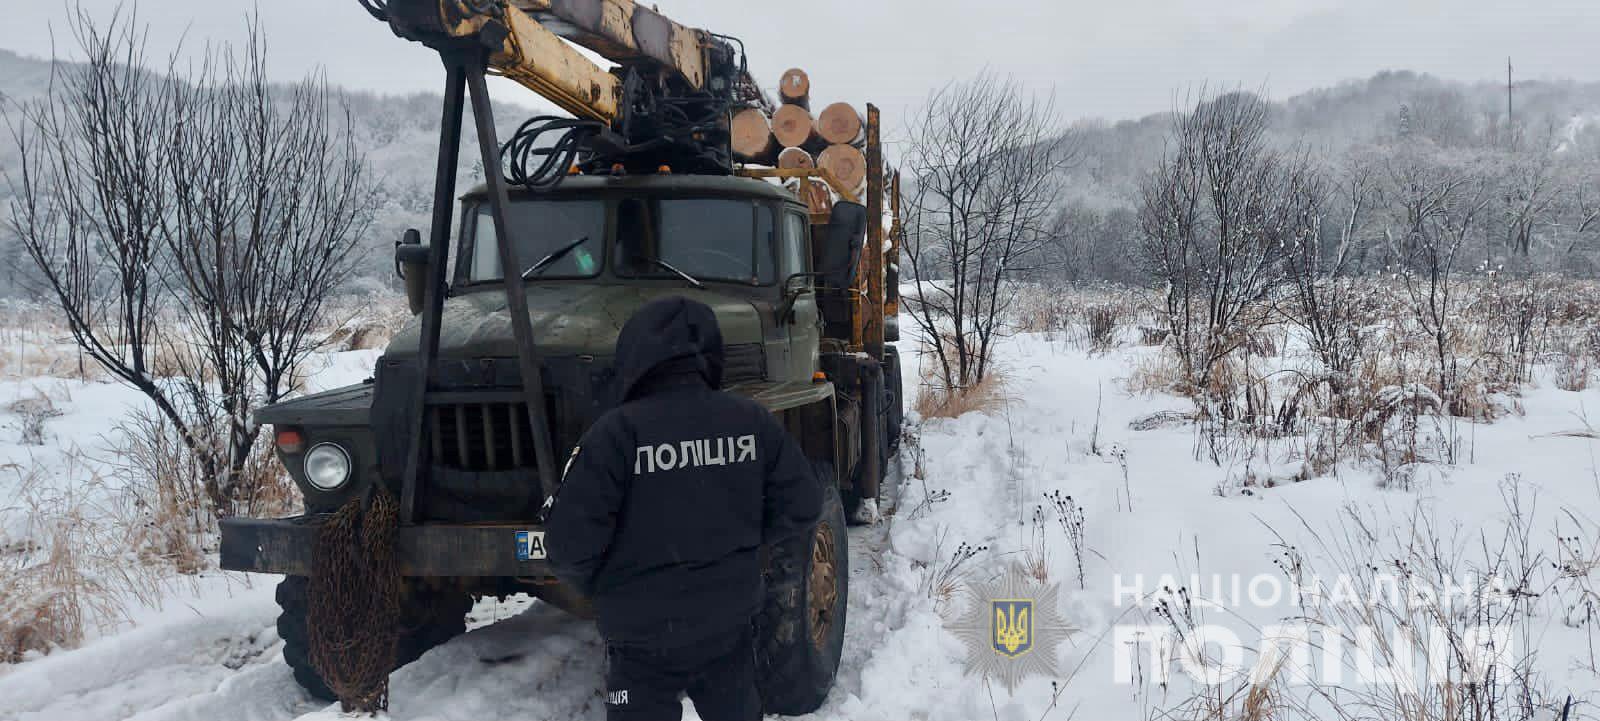 На Закарпатті затримали вантажівку з нелегальною деревиною (ФОТО)